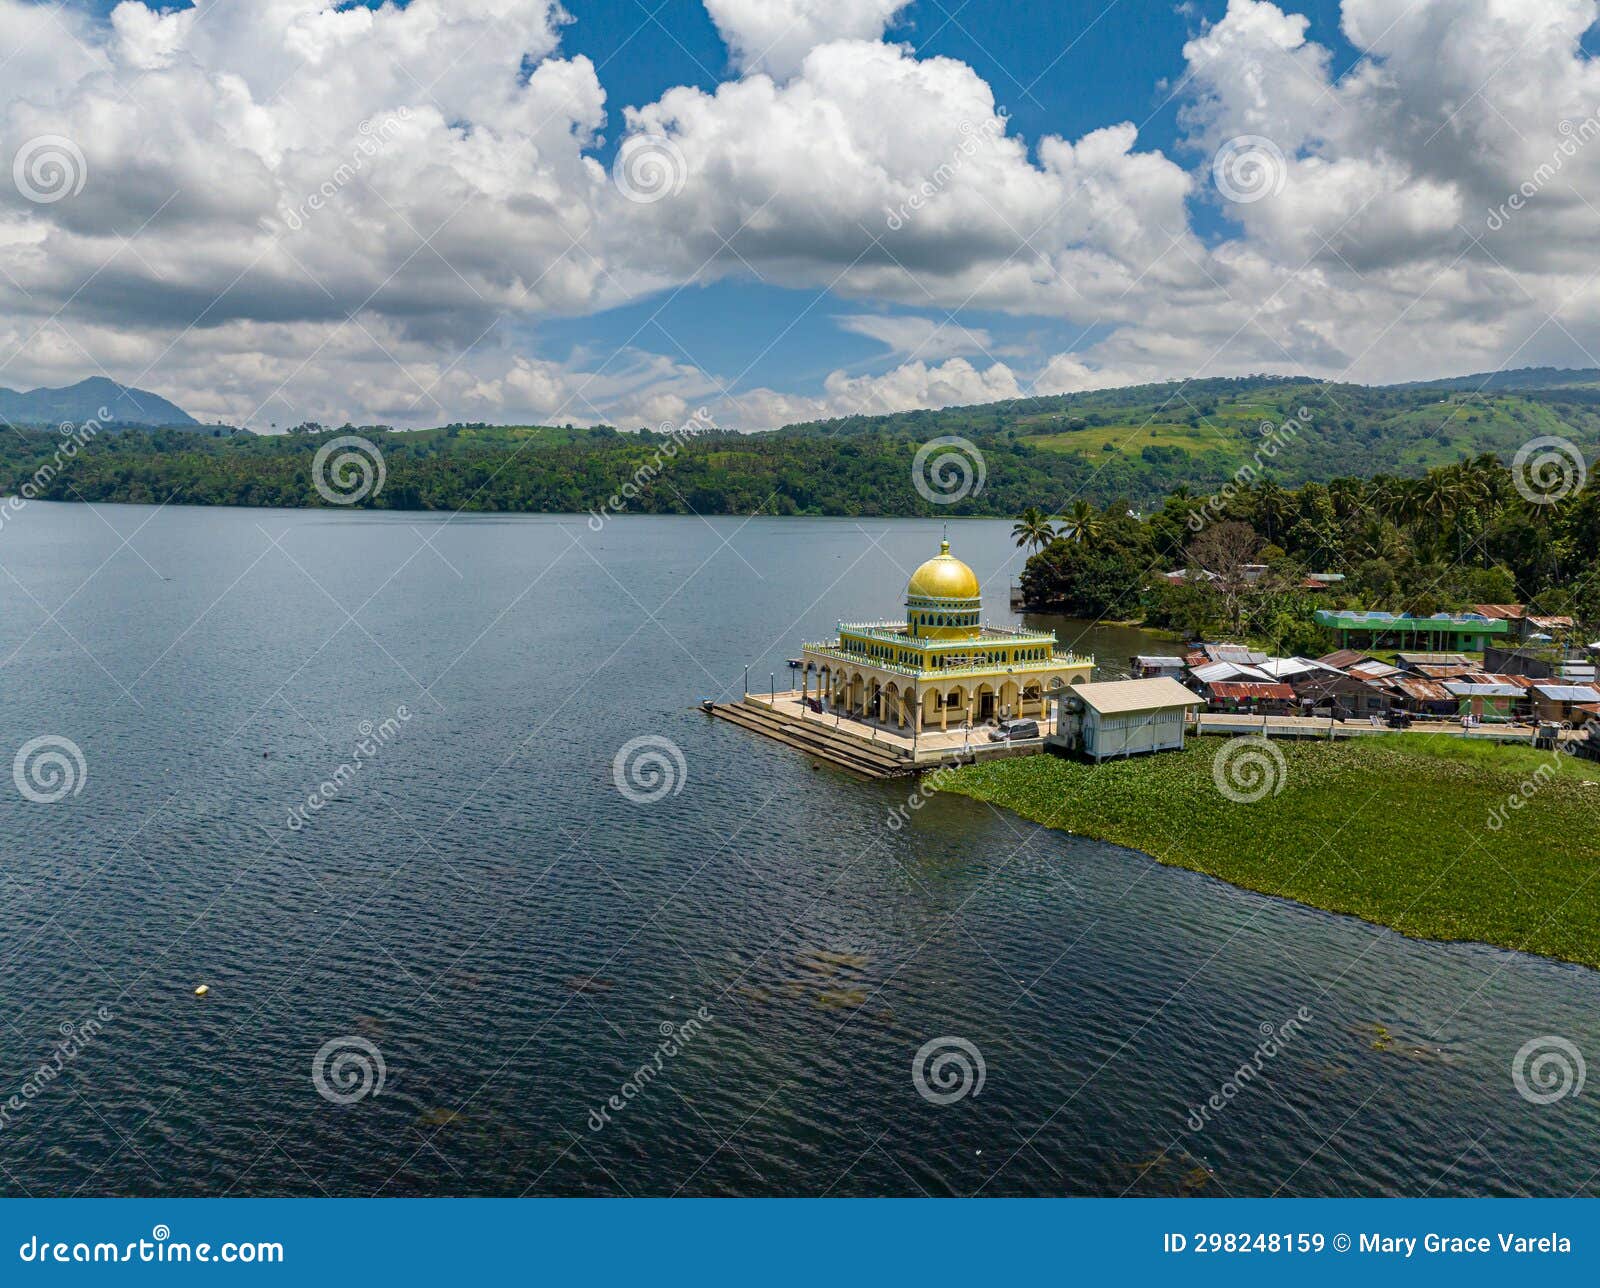 lake lanao in lanao del sur. philippines.